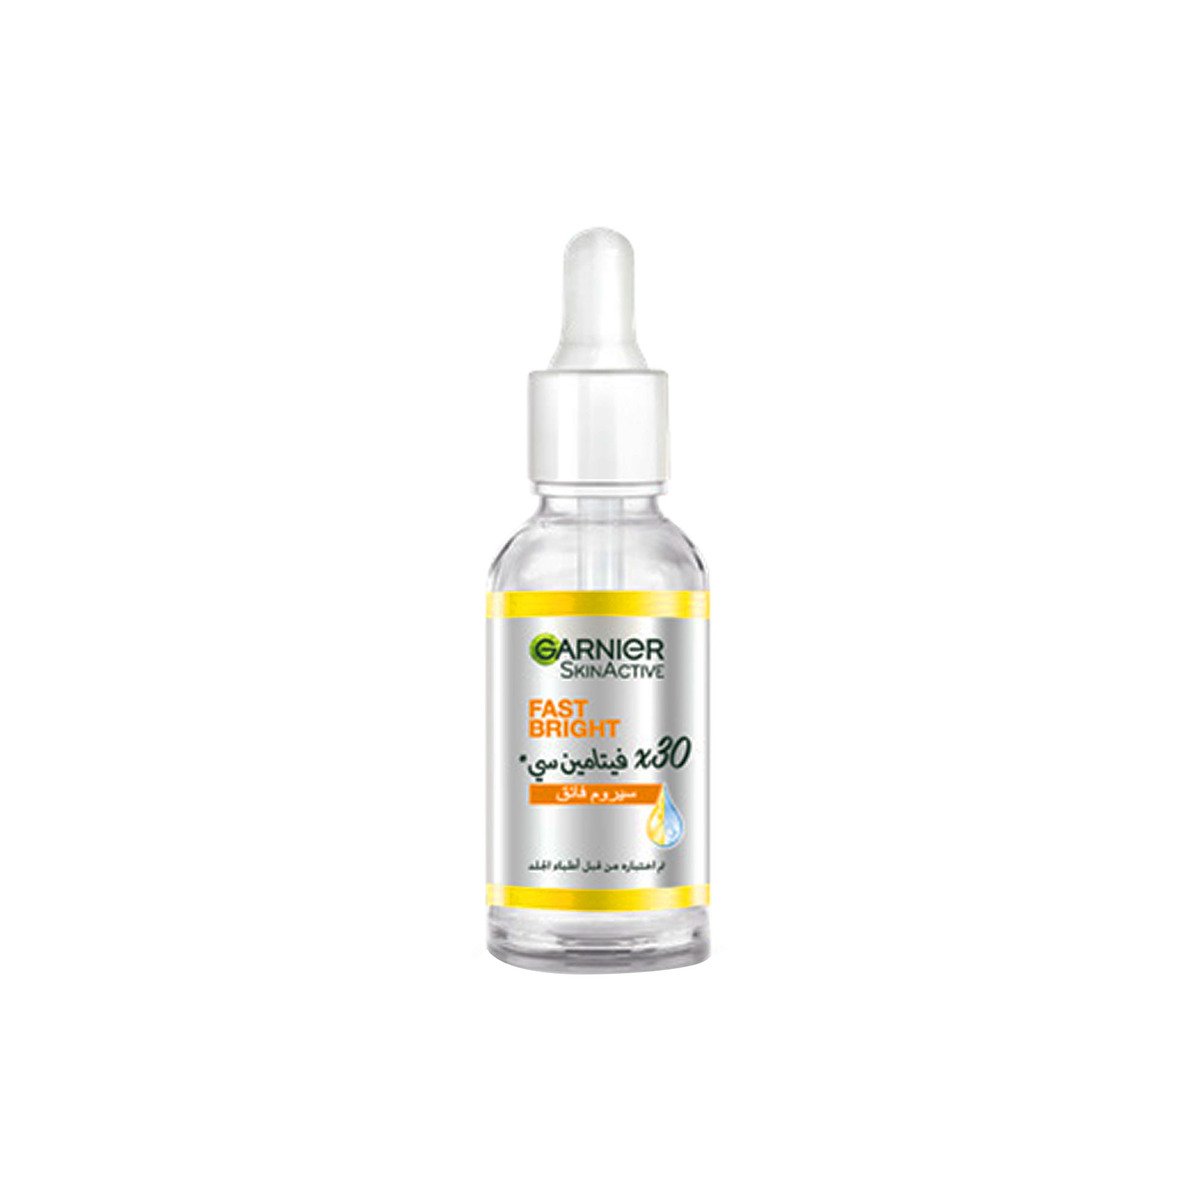 Garnier Skin Active Fast Bright Vitamin C Booster Serum 30 ml + 15 ml